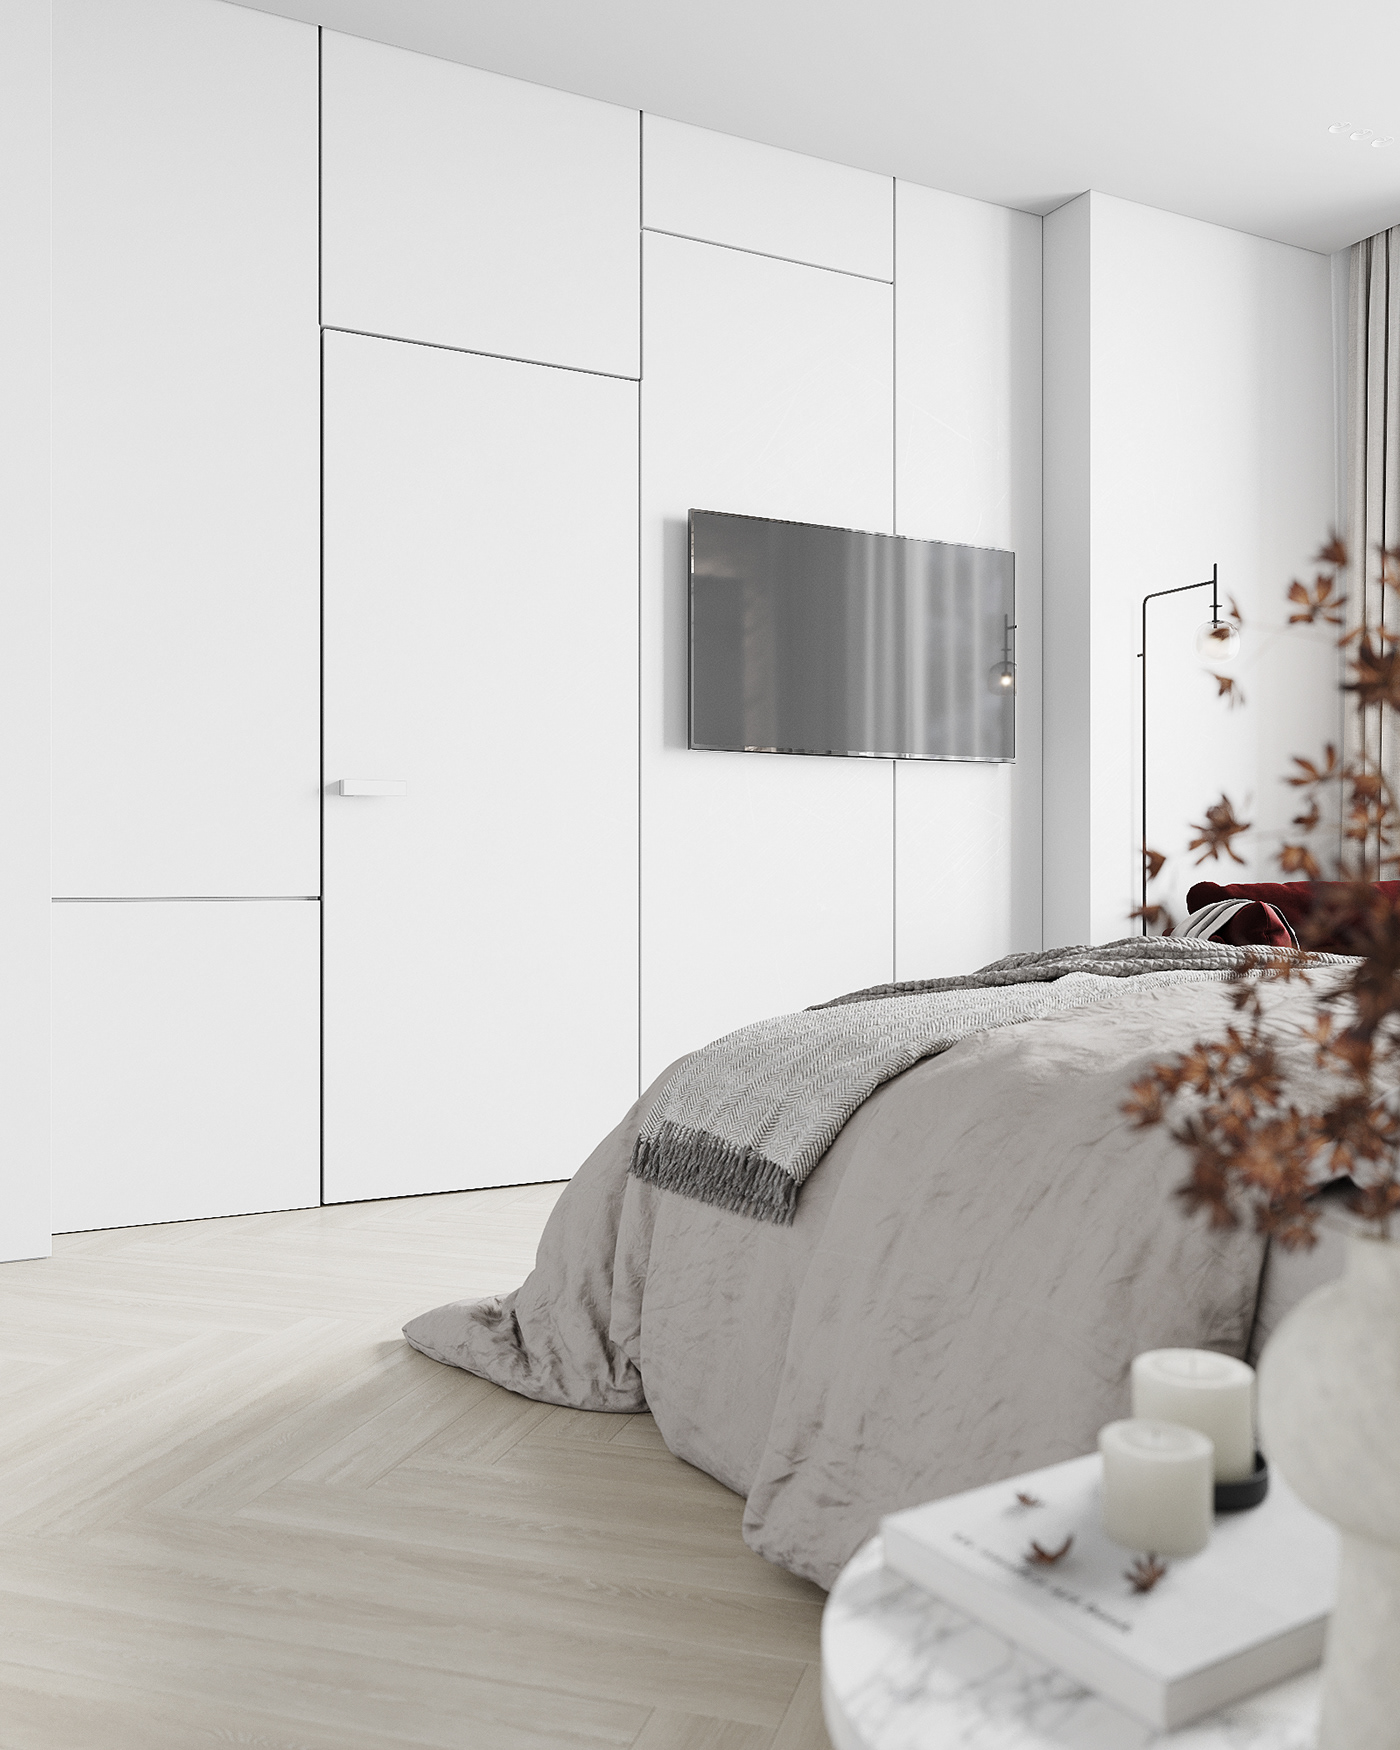 architecture bedroom design Interior interiordesign minimalizm Render